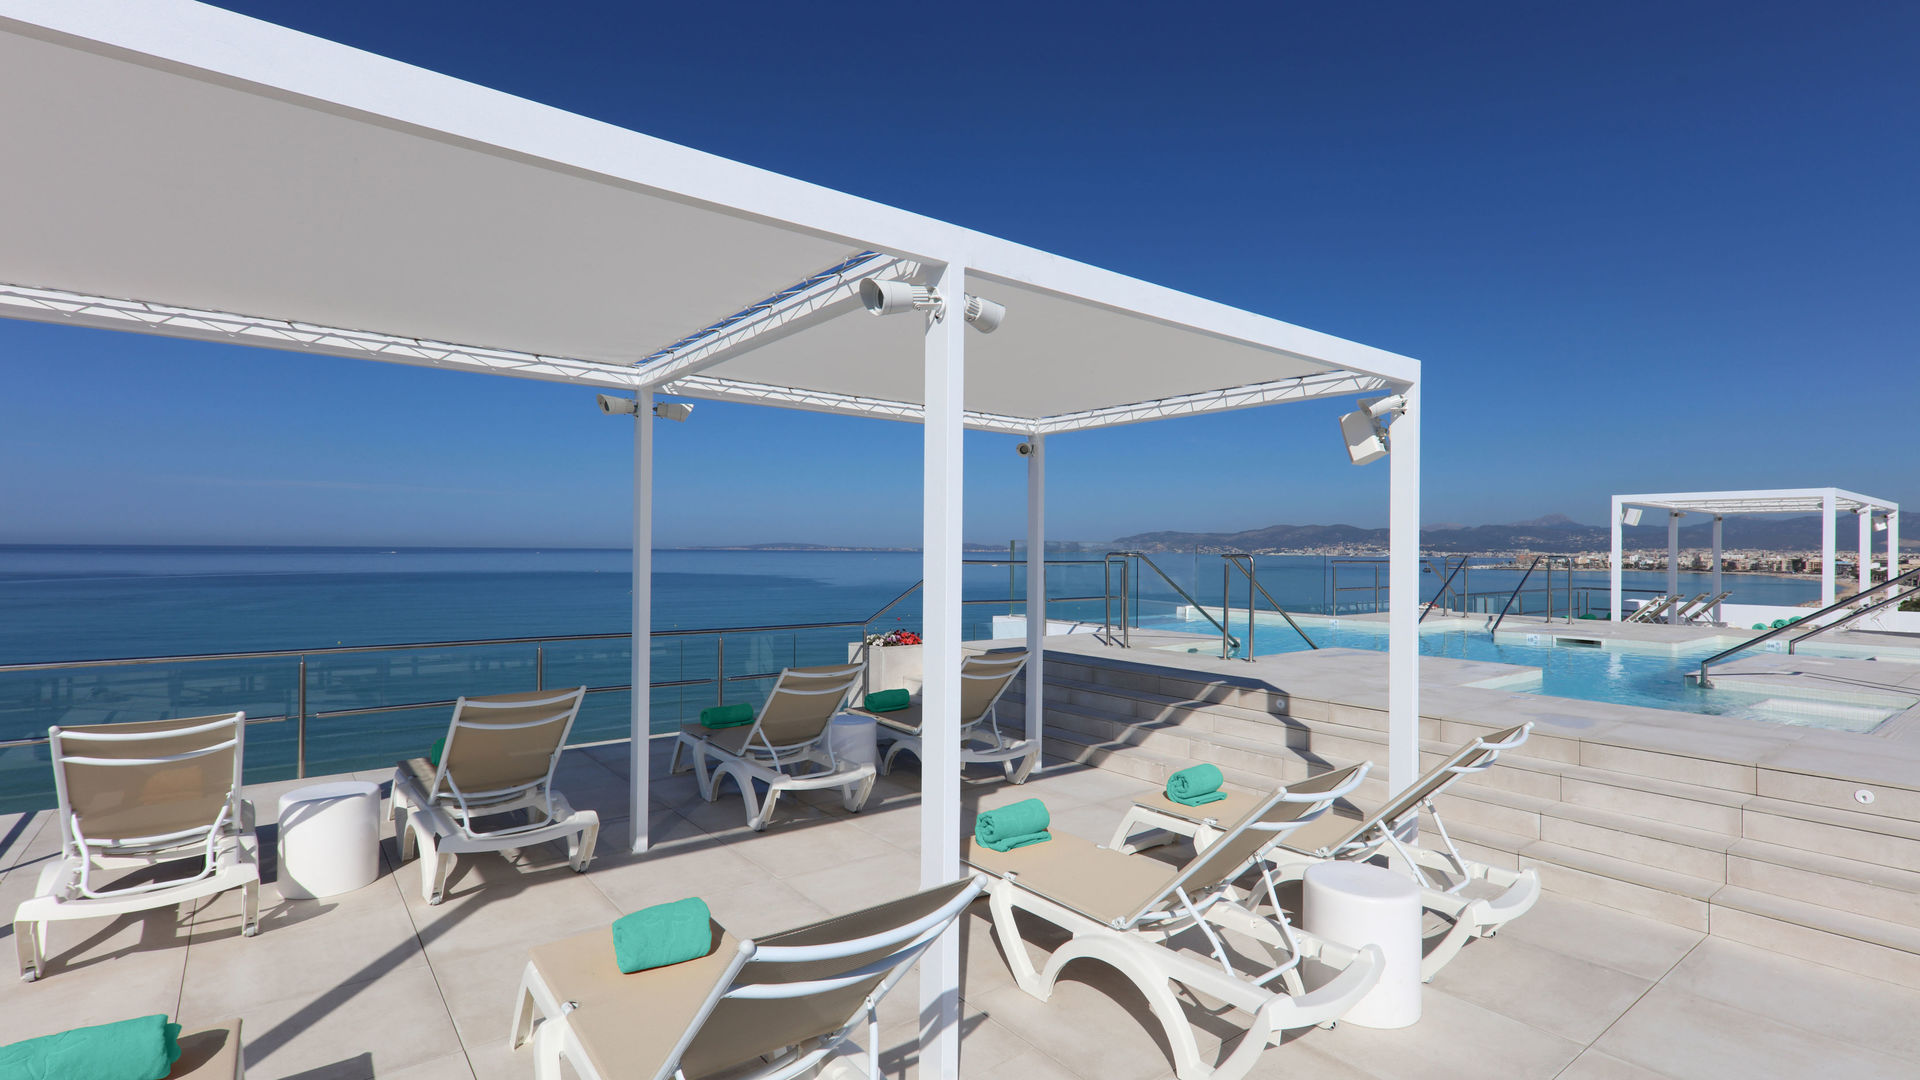 Solarium y piscina con jacuzzi en azotea hotel en Mallorca